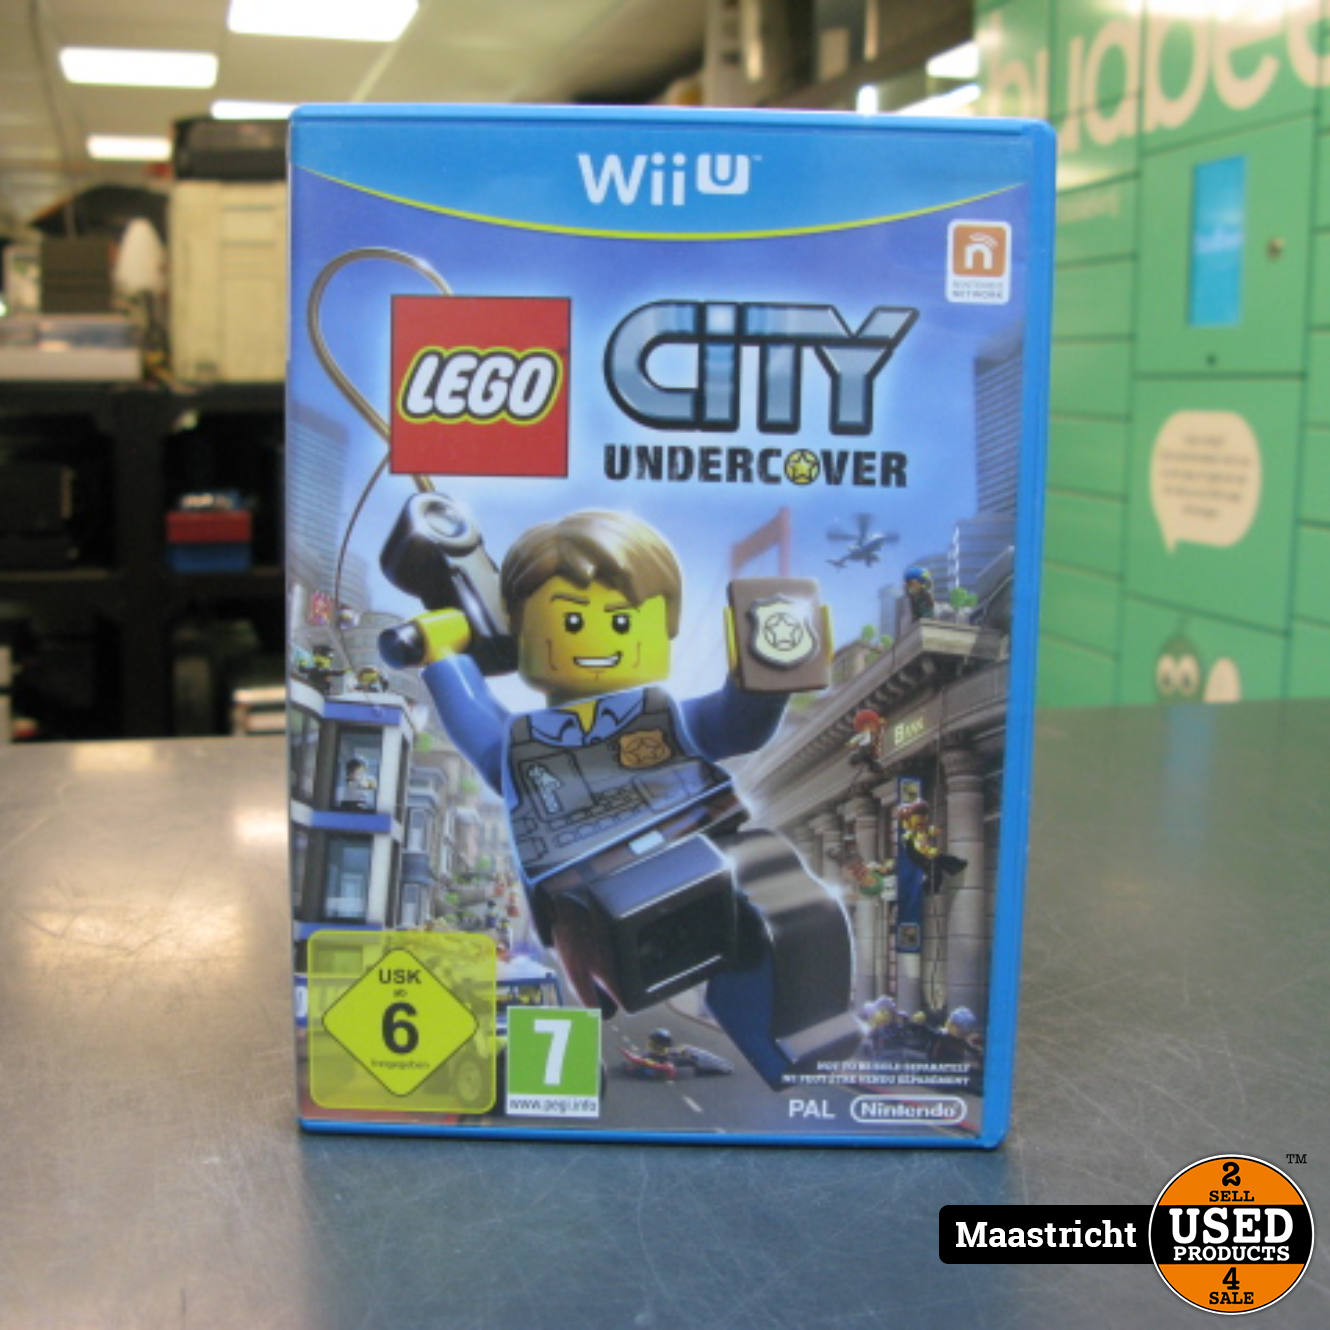 Schaap Broers en zussen Optimistisch Lego City Undercover Wii U - Used Products Maastricht